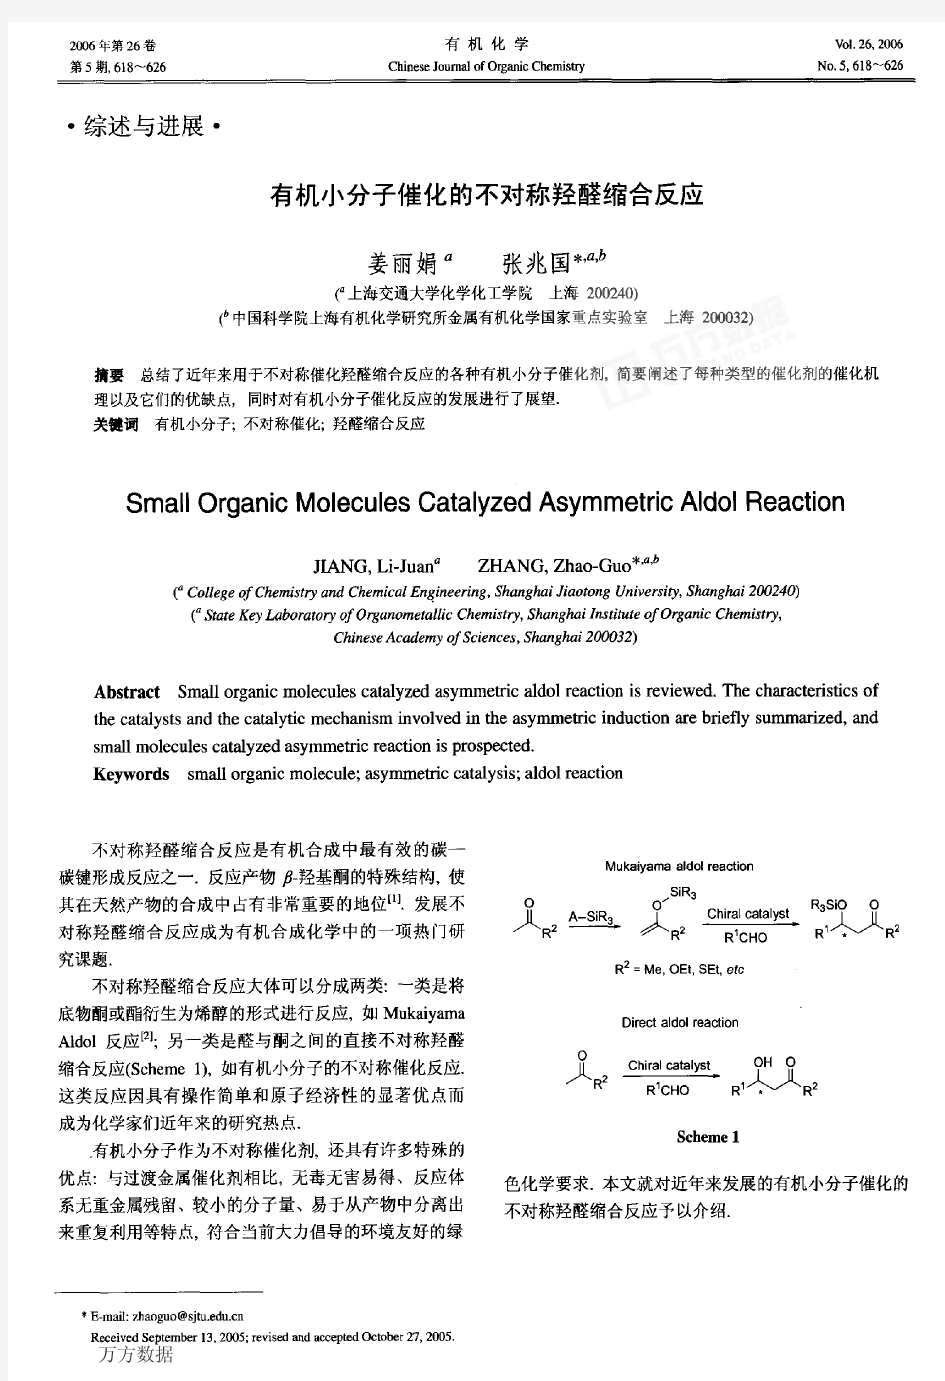 有机小分子催化的不对称羟醛缩合反应